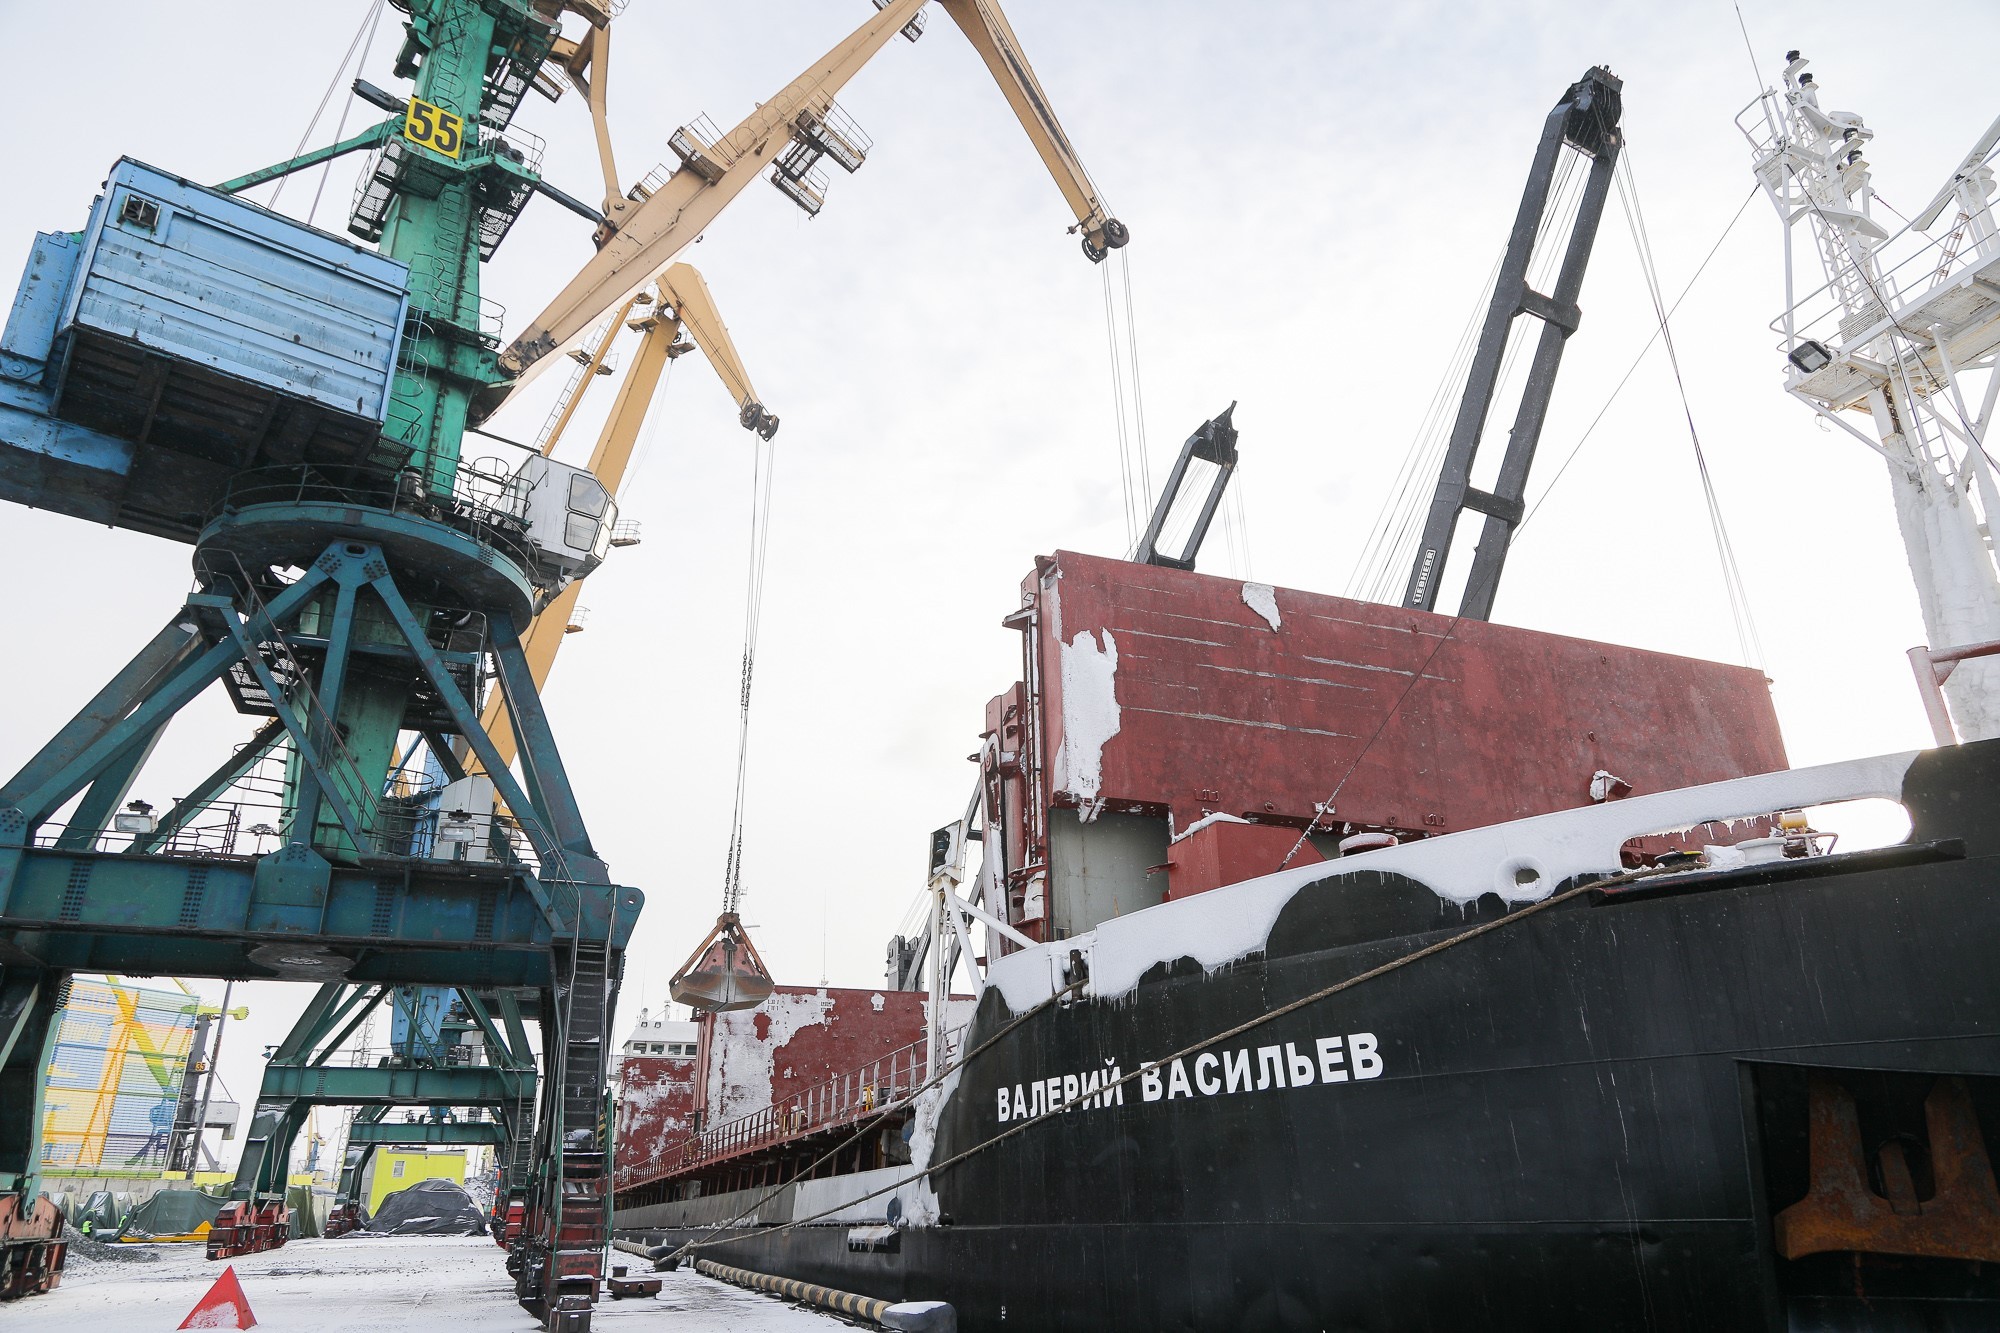 Мурманский морской торговый порт  выполняет  роль ключевого логистического центра в реализации  арктической программы